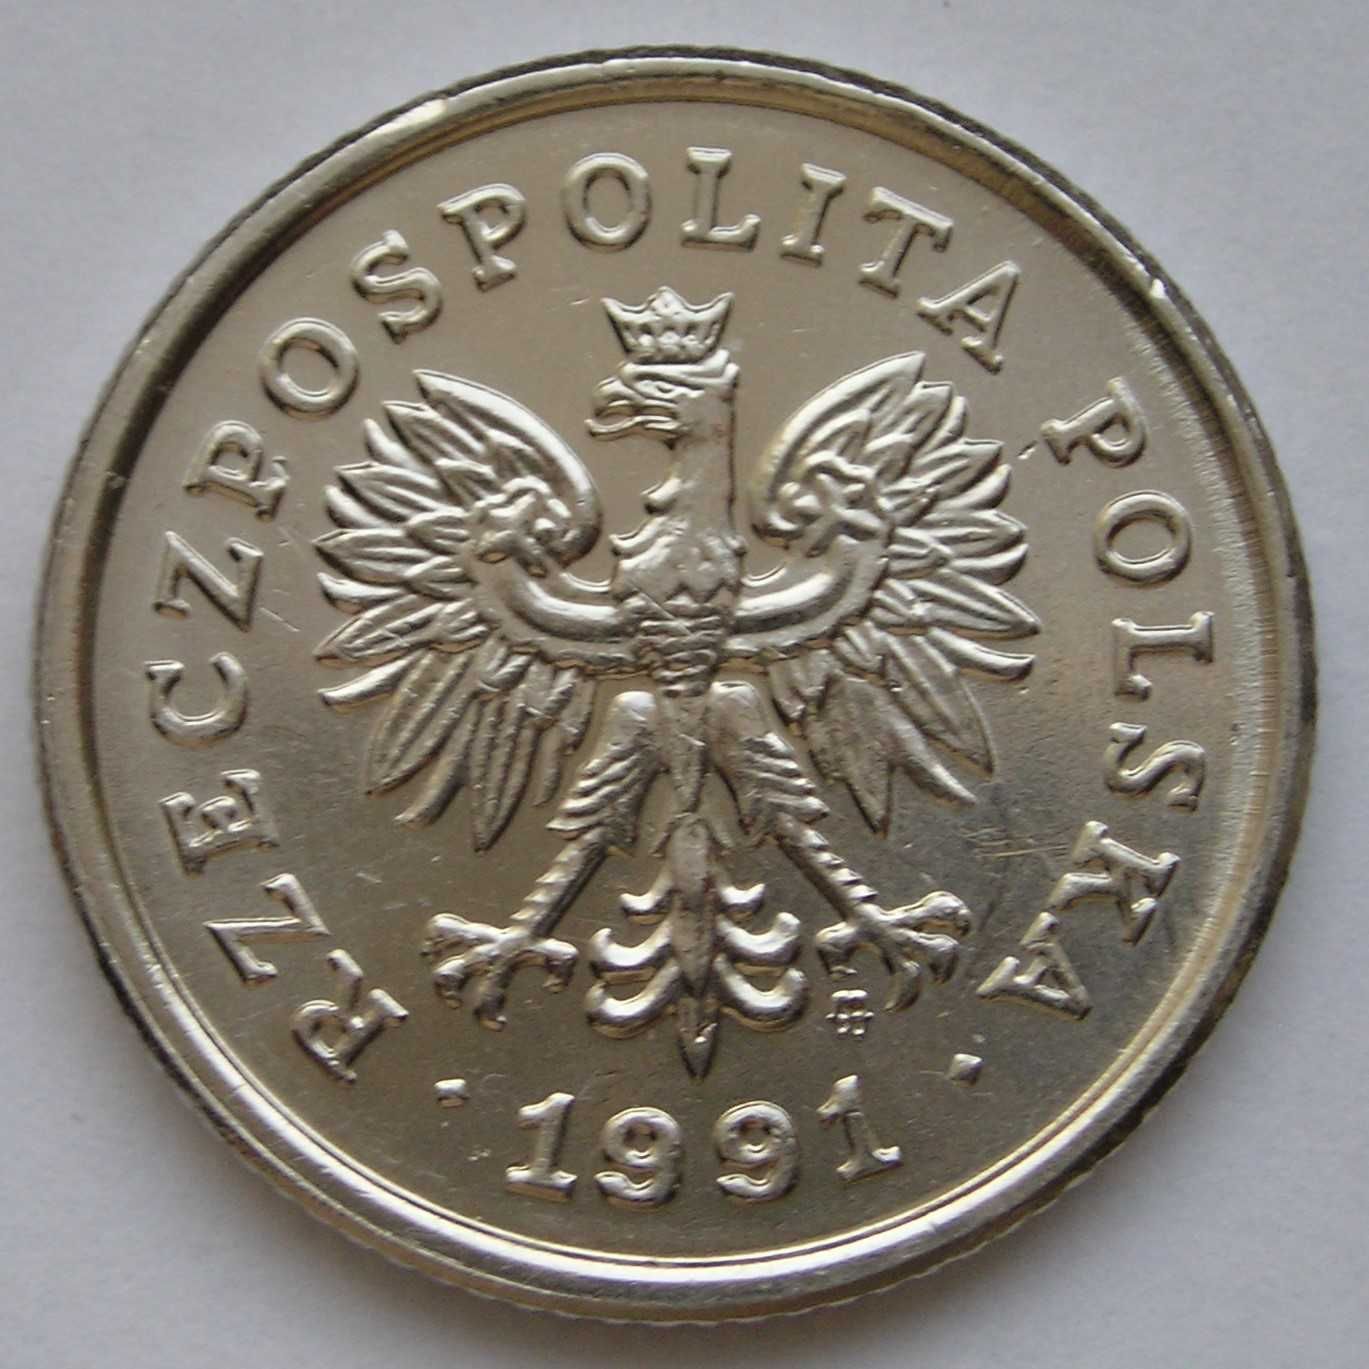 Polska 50 groszy 1991 - stan 1/2